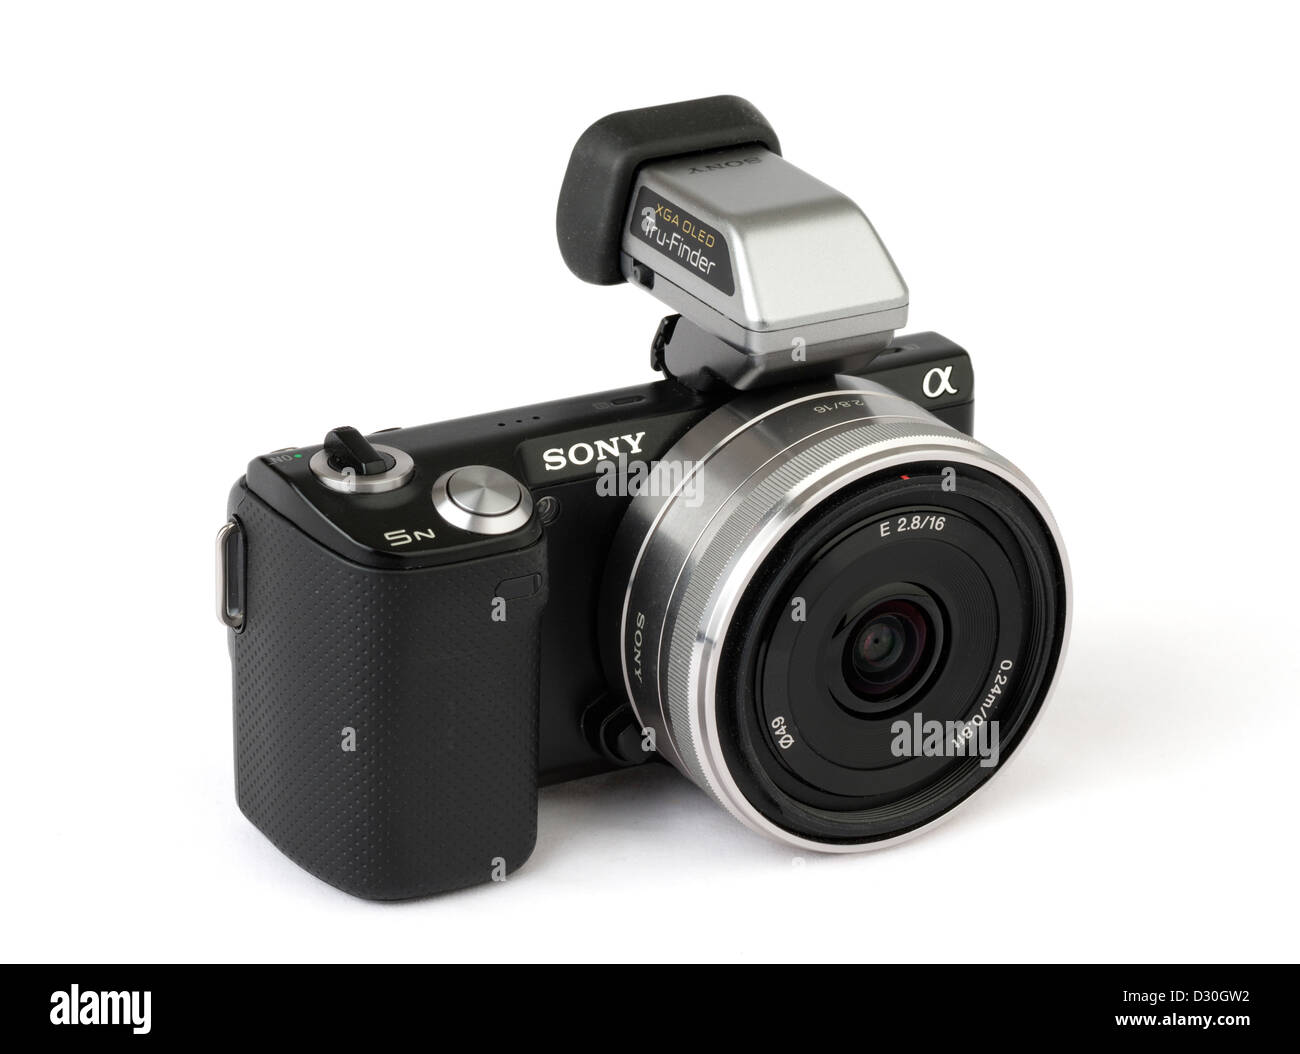 Sony Alpha NEX 5N mirrorless à objectif interchangeable appareil photo compact avec viseur électronique OLED et 16 mm pancake lens Banque D'Images